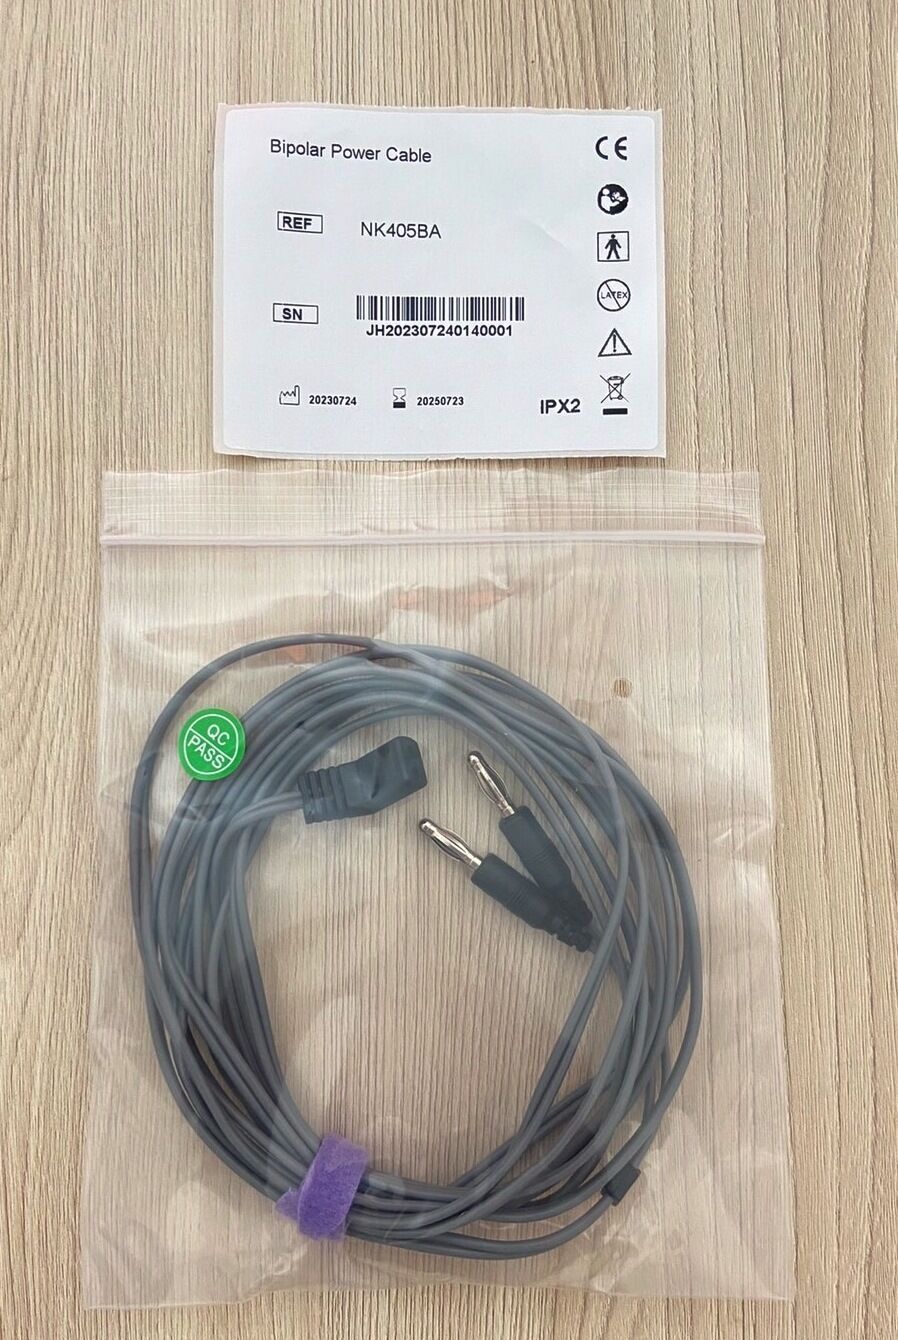 Electrosurgical Bipolar cable with US type connector_สายเคเบิ้ลไบโพล่าร์เครื่องจี้ผ่าตัดไฟฟ้าแบบข้อต่อ 2 ขา มาตรฐานอเมริกา